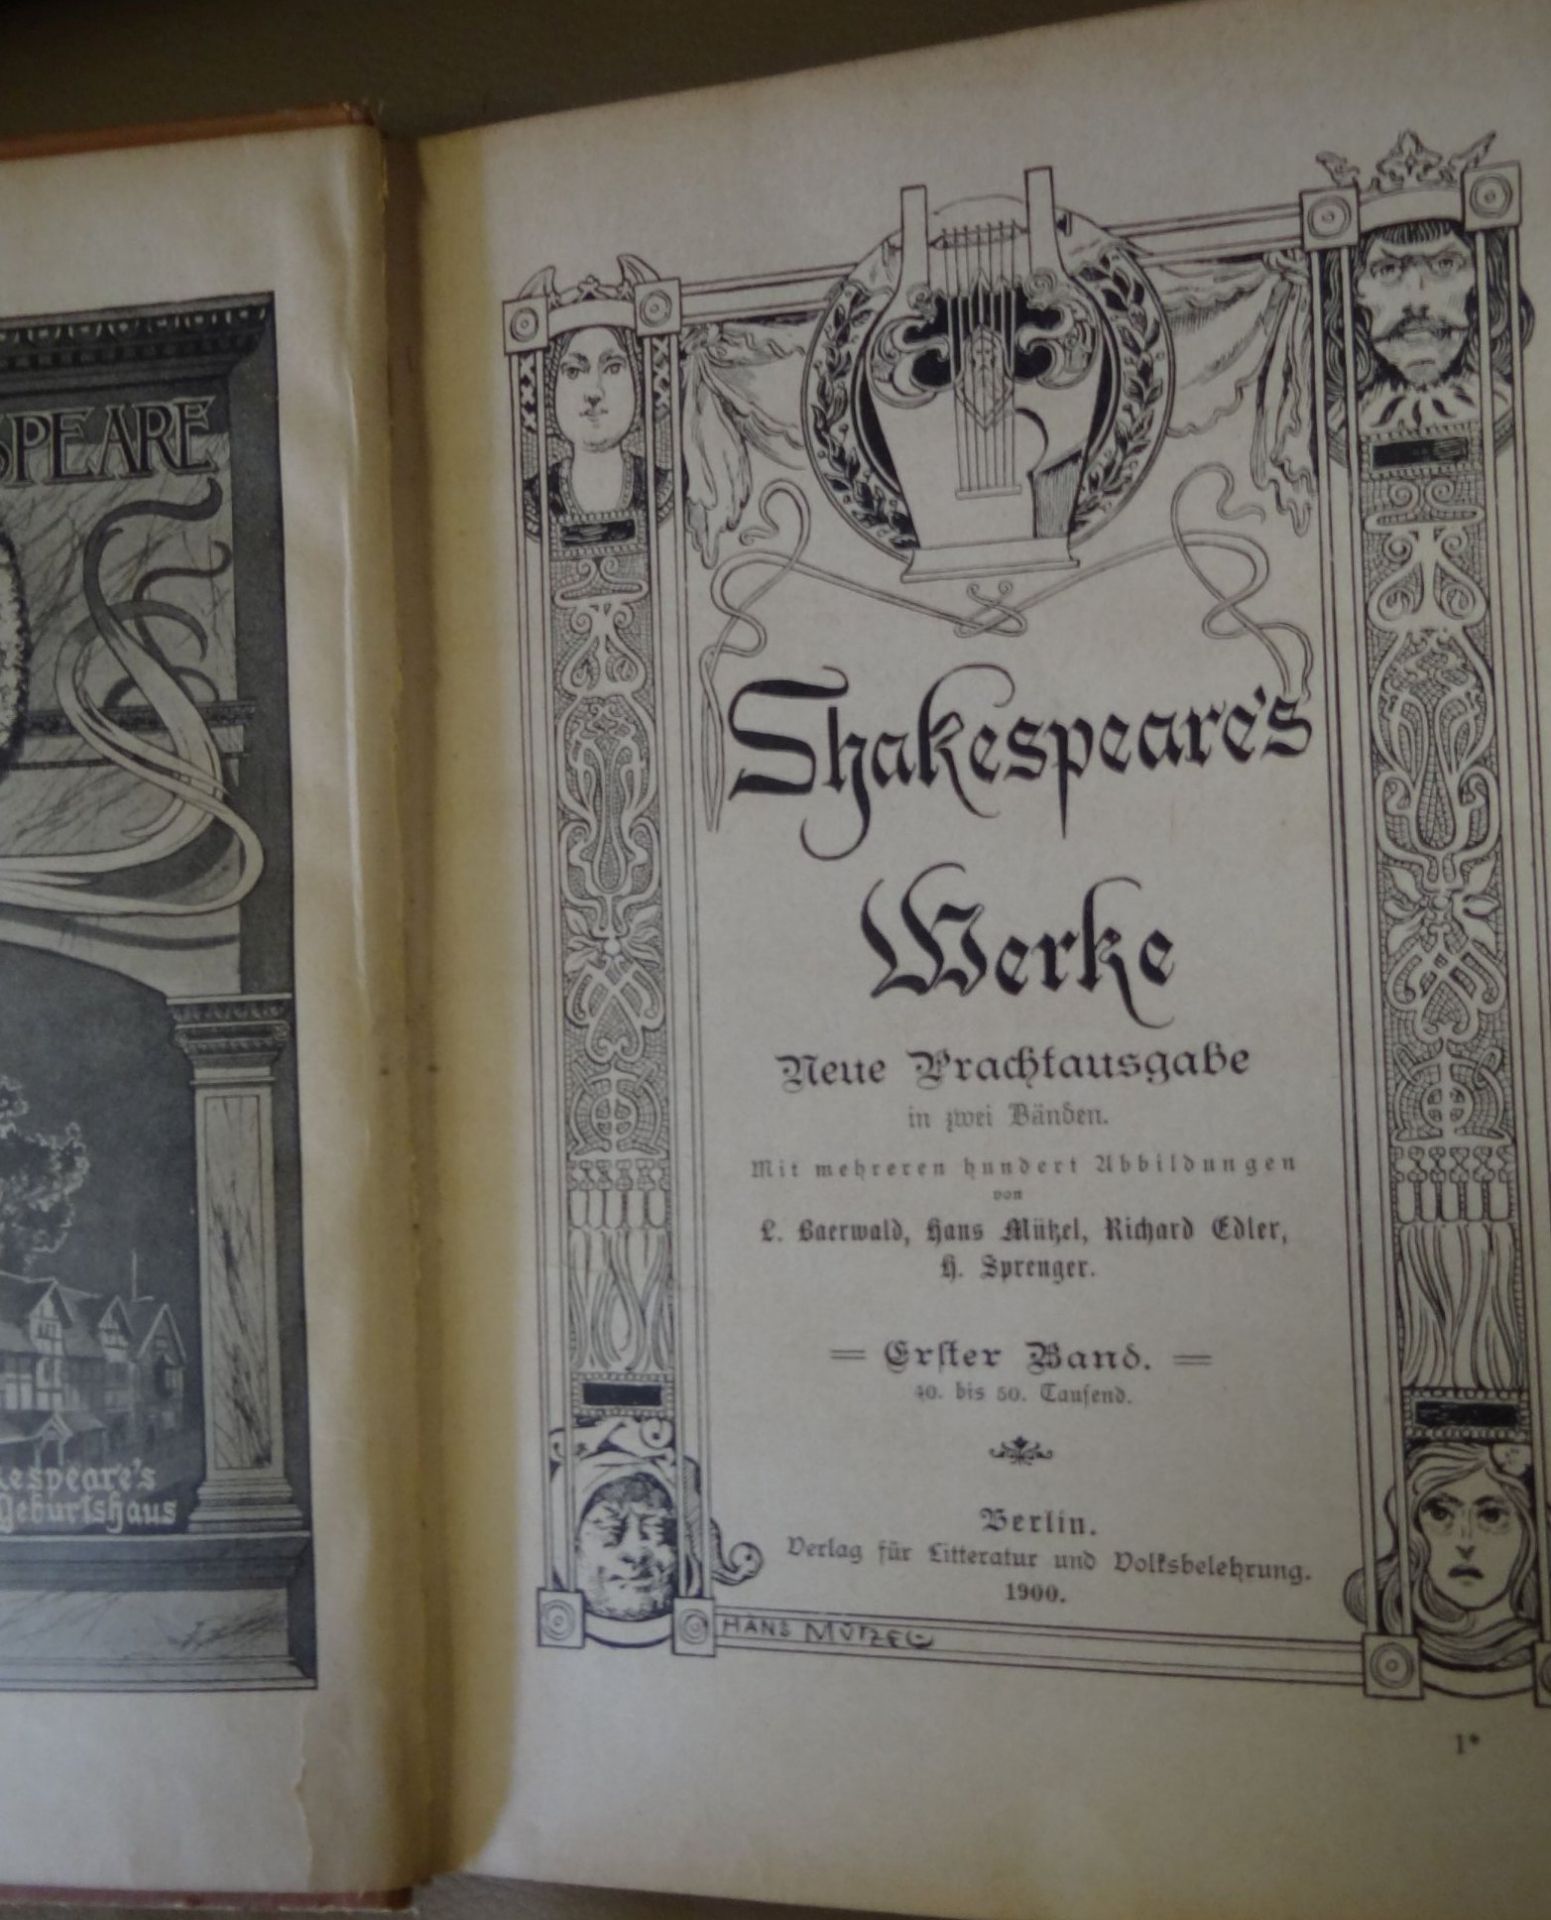 Shakespeares Werke in 2 Bänden, 1900, Alters-u. Gebrauchsspure - Image 3 of 6